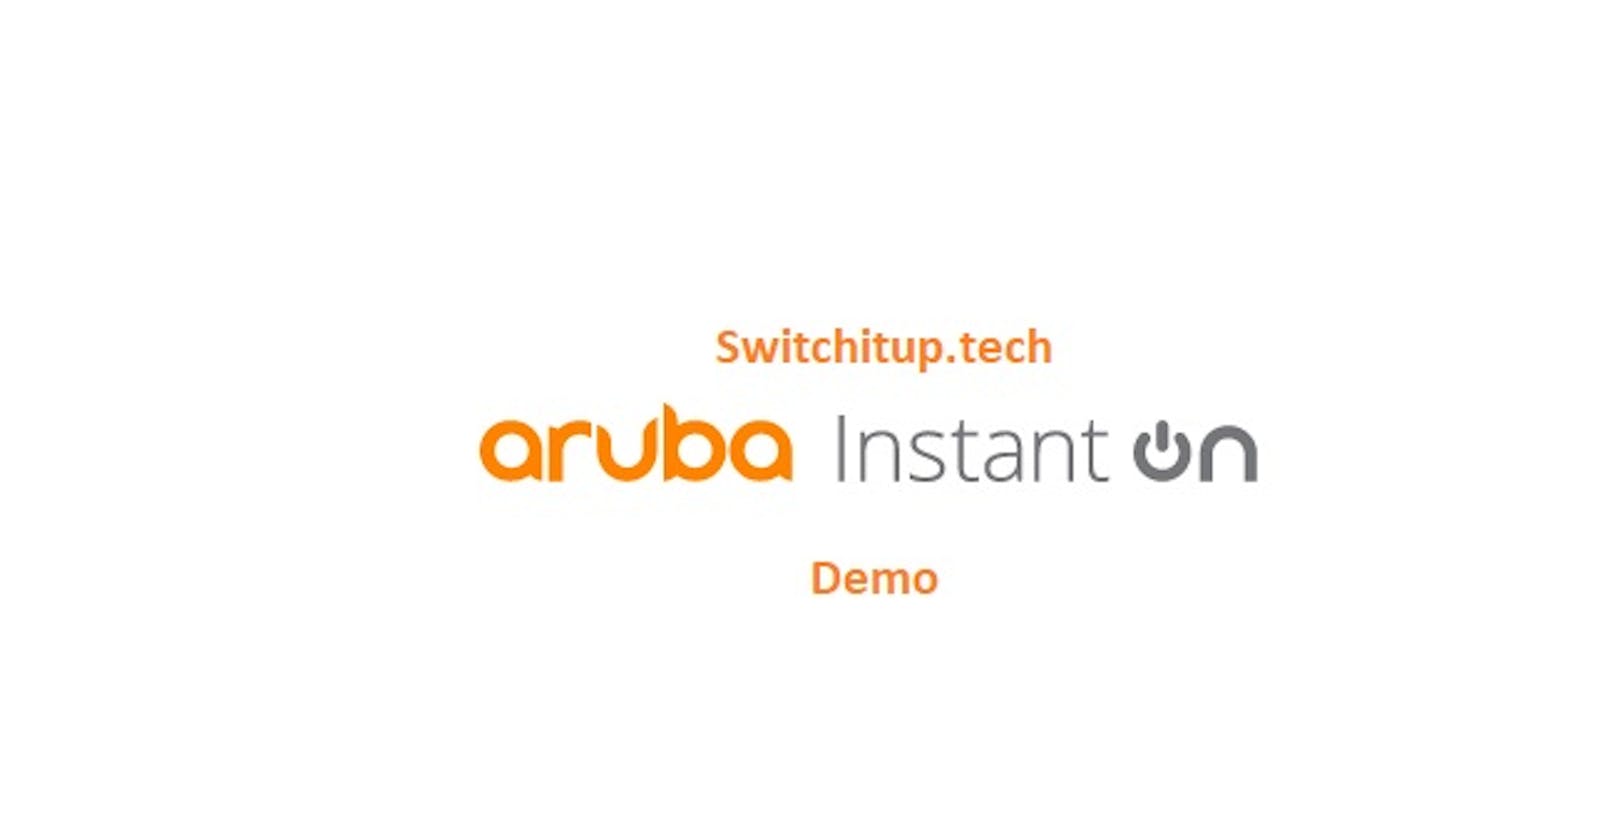 Demo: Aruba InstantOn